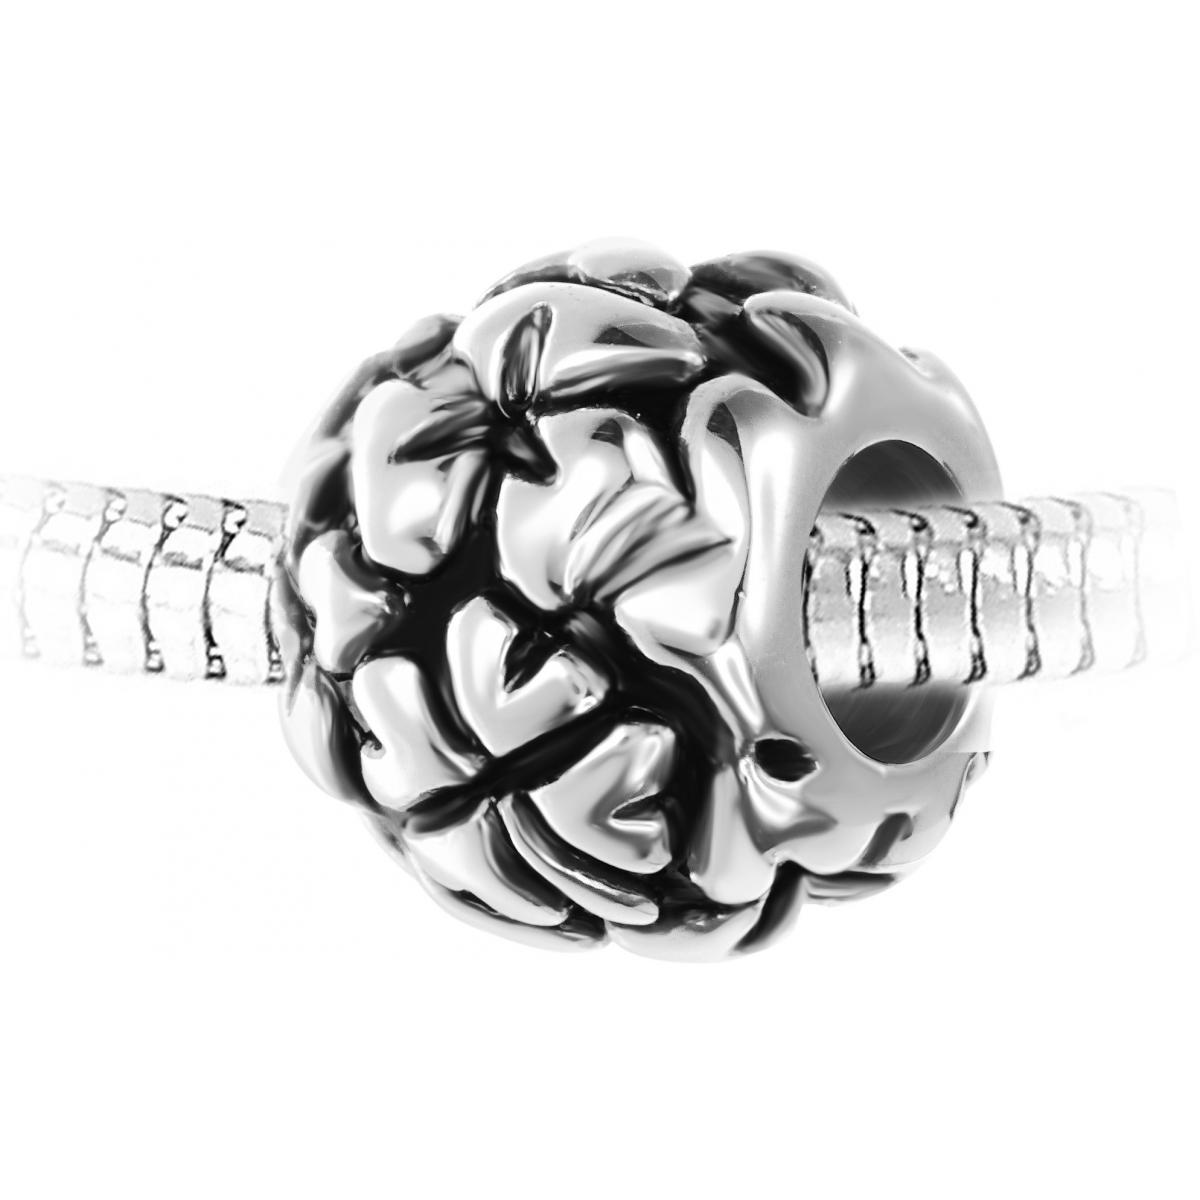 Promo : Charm perle acier par SC Crystal BEA0263